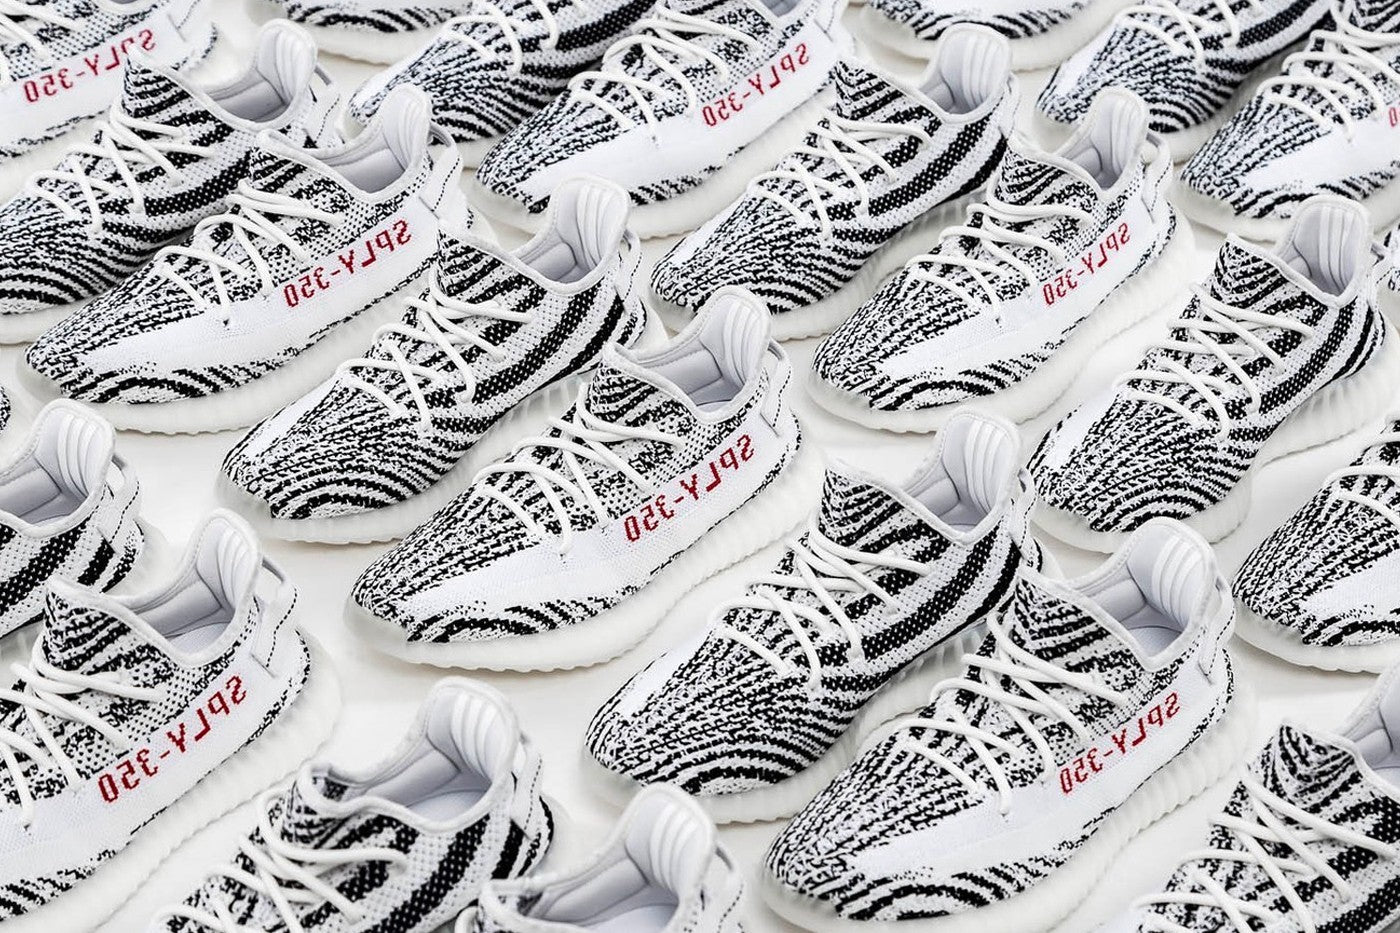 adidas Yeezy 350 V2 Zebra